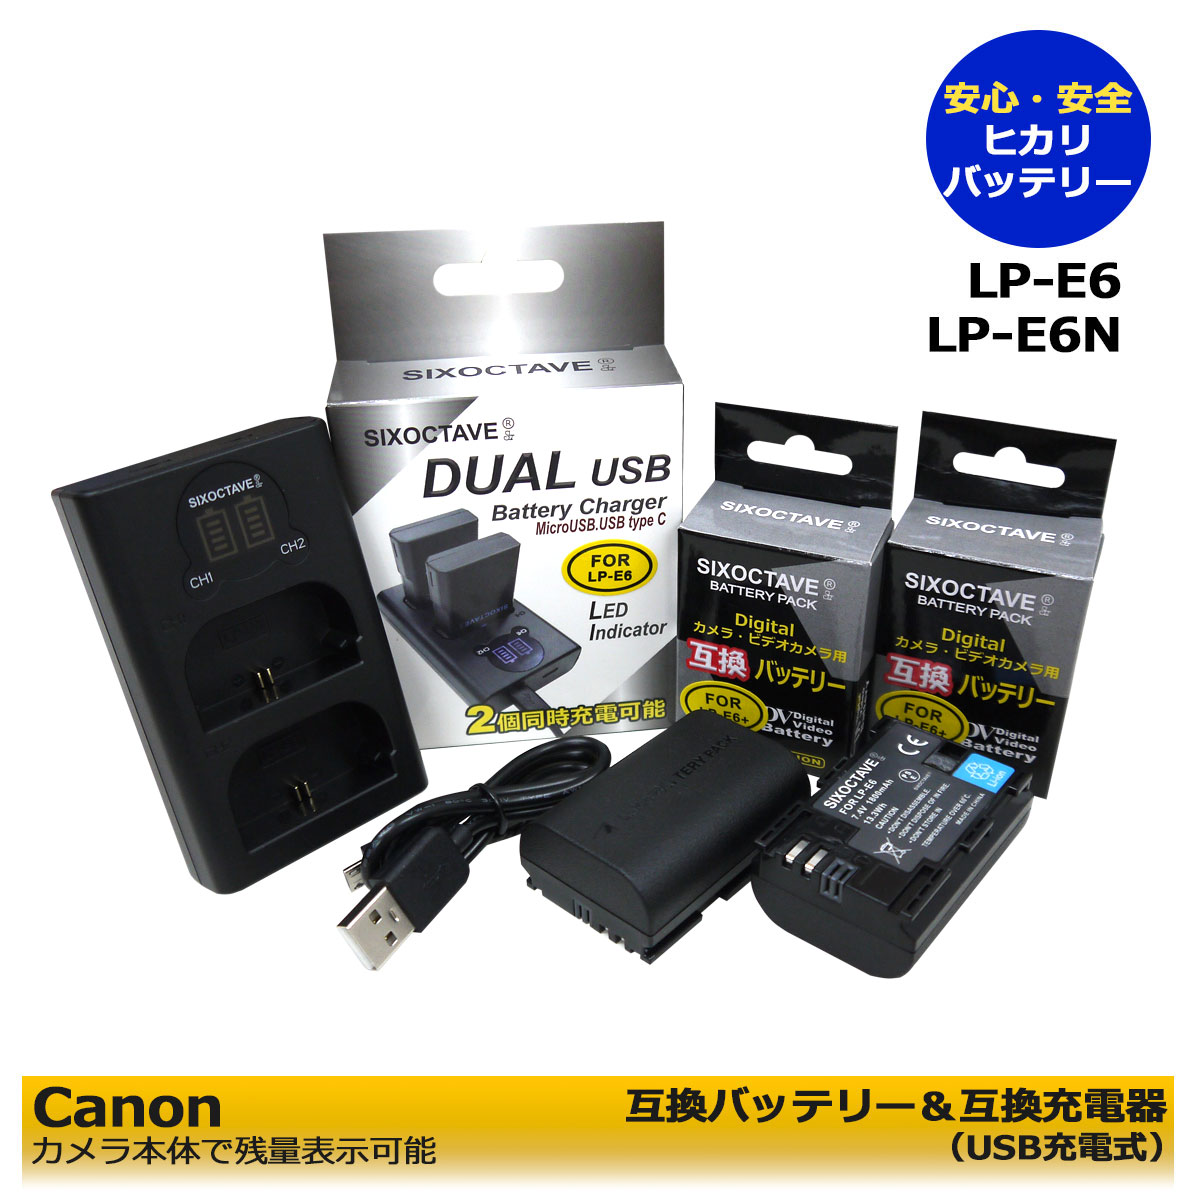 【あす楽対応】CANON キャノン LP-E6 ...の商品画像